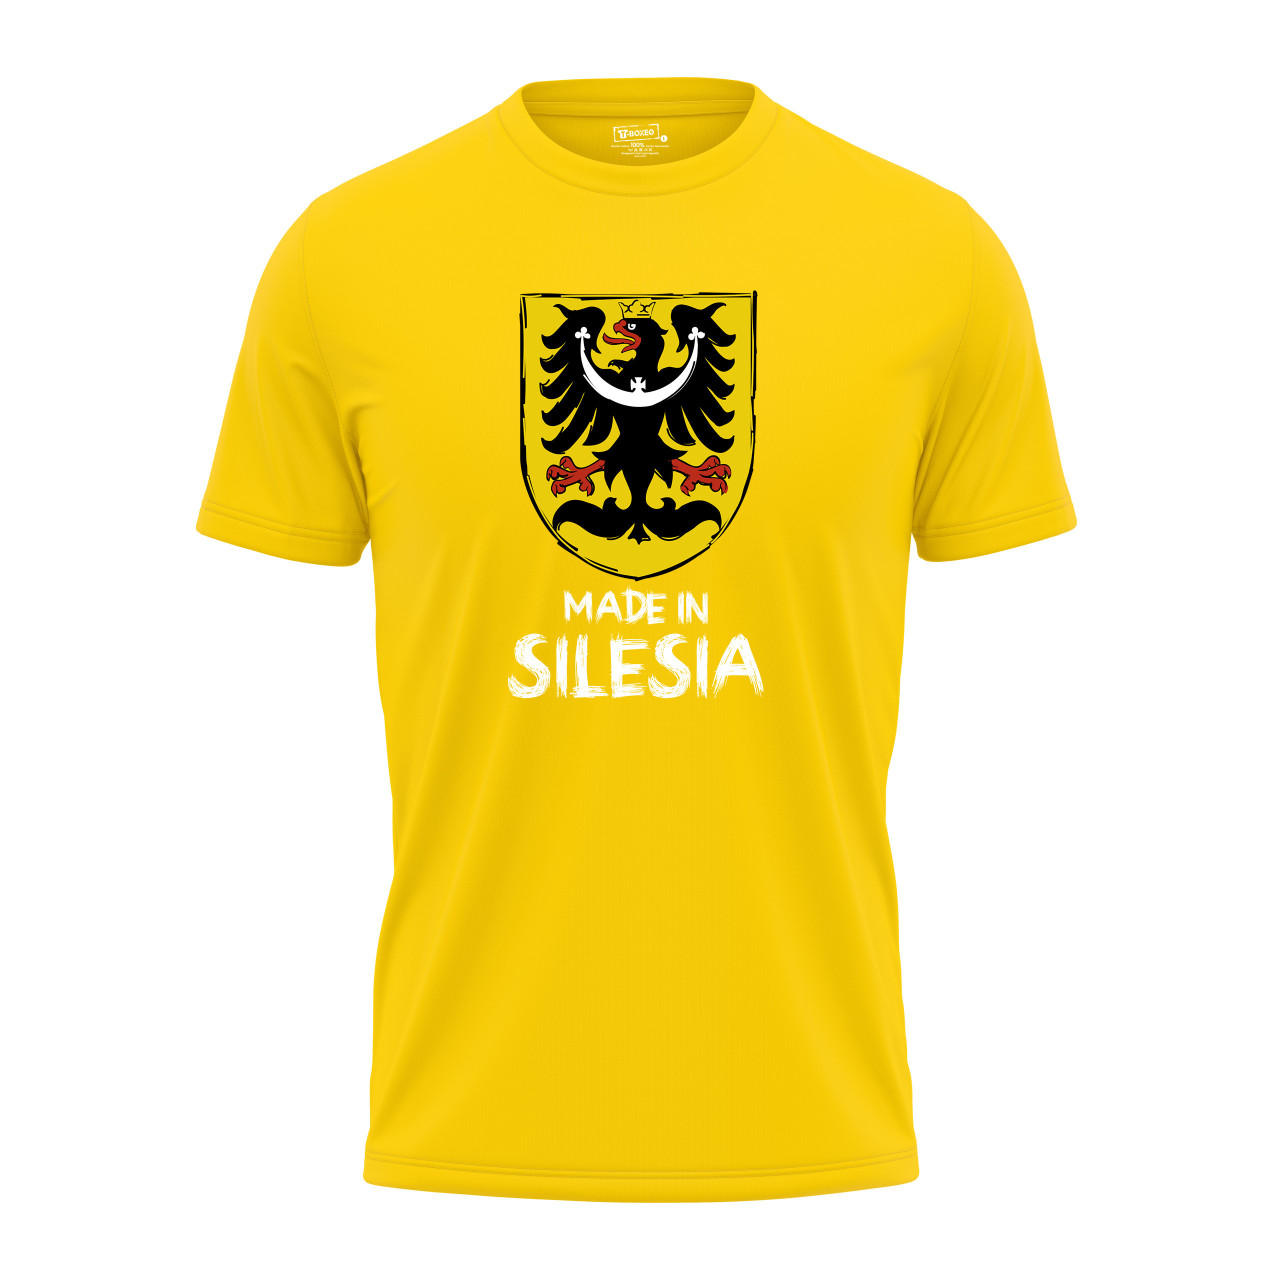 Pánské tričko s potiskem “Made in Silesia”